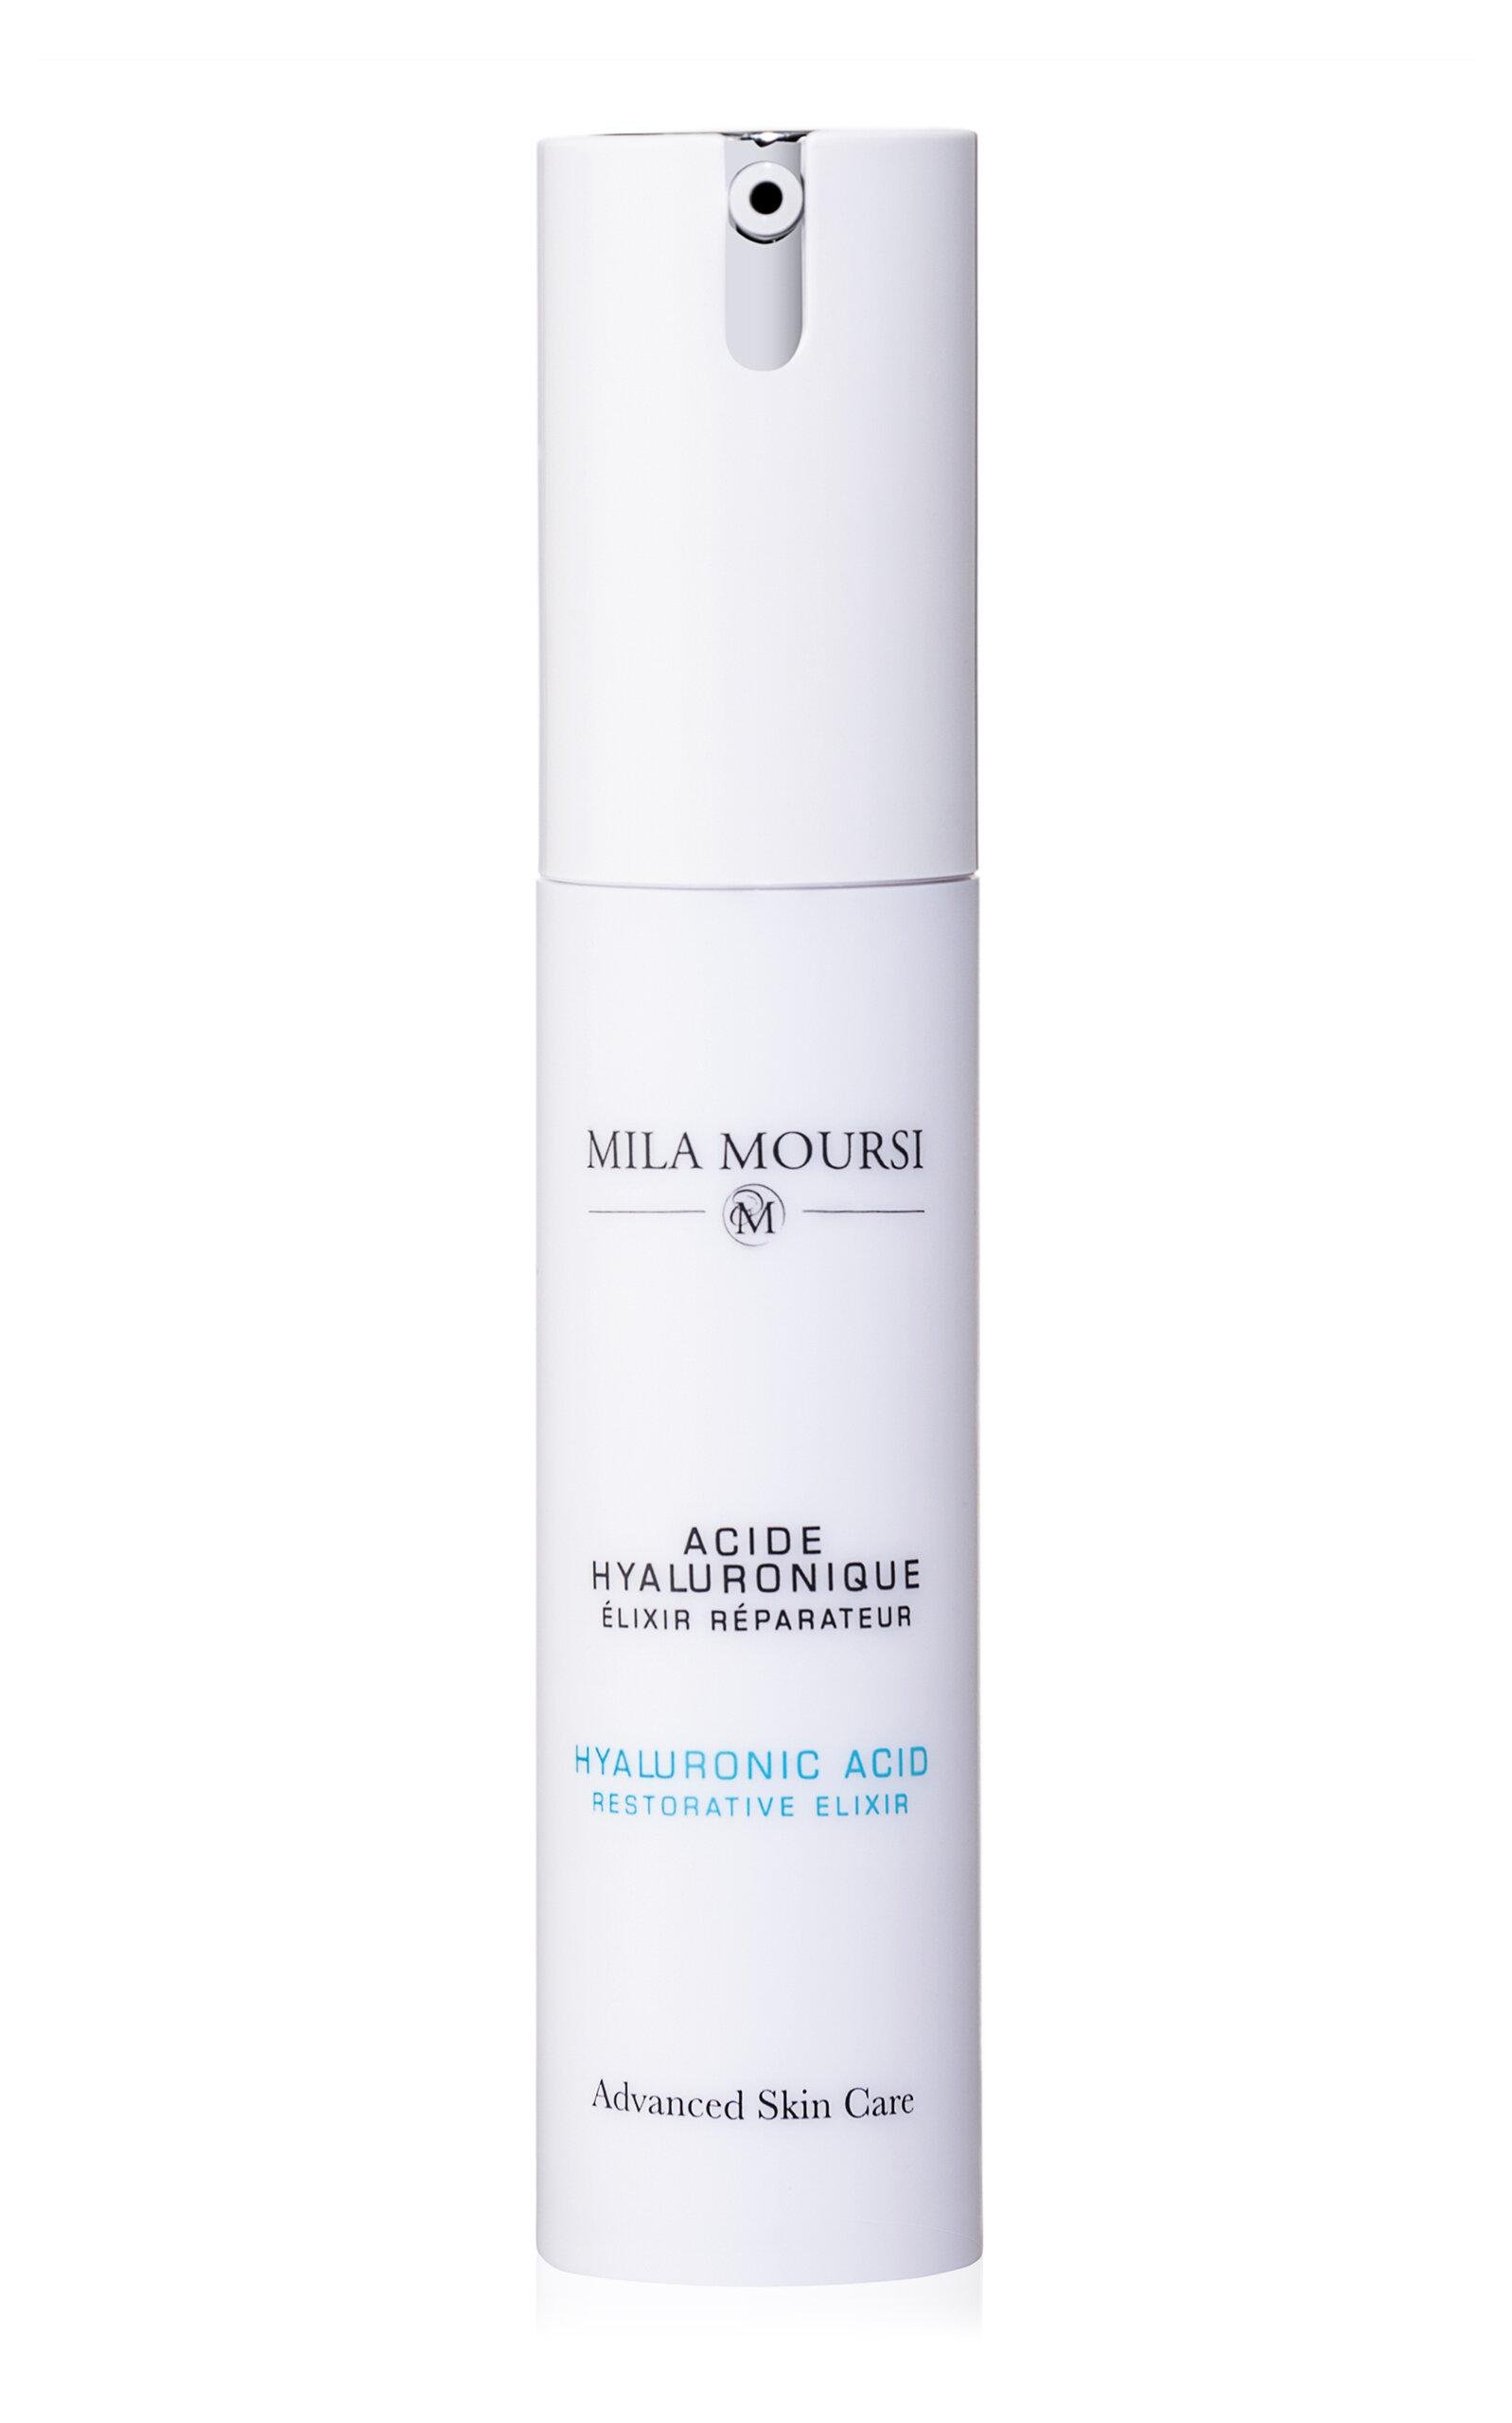 Mila Moursi Skin Care Hyaluronic Acid Restorative Elixir - Moda Operandi by MILA MOURSI SKIN CARE